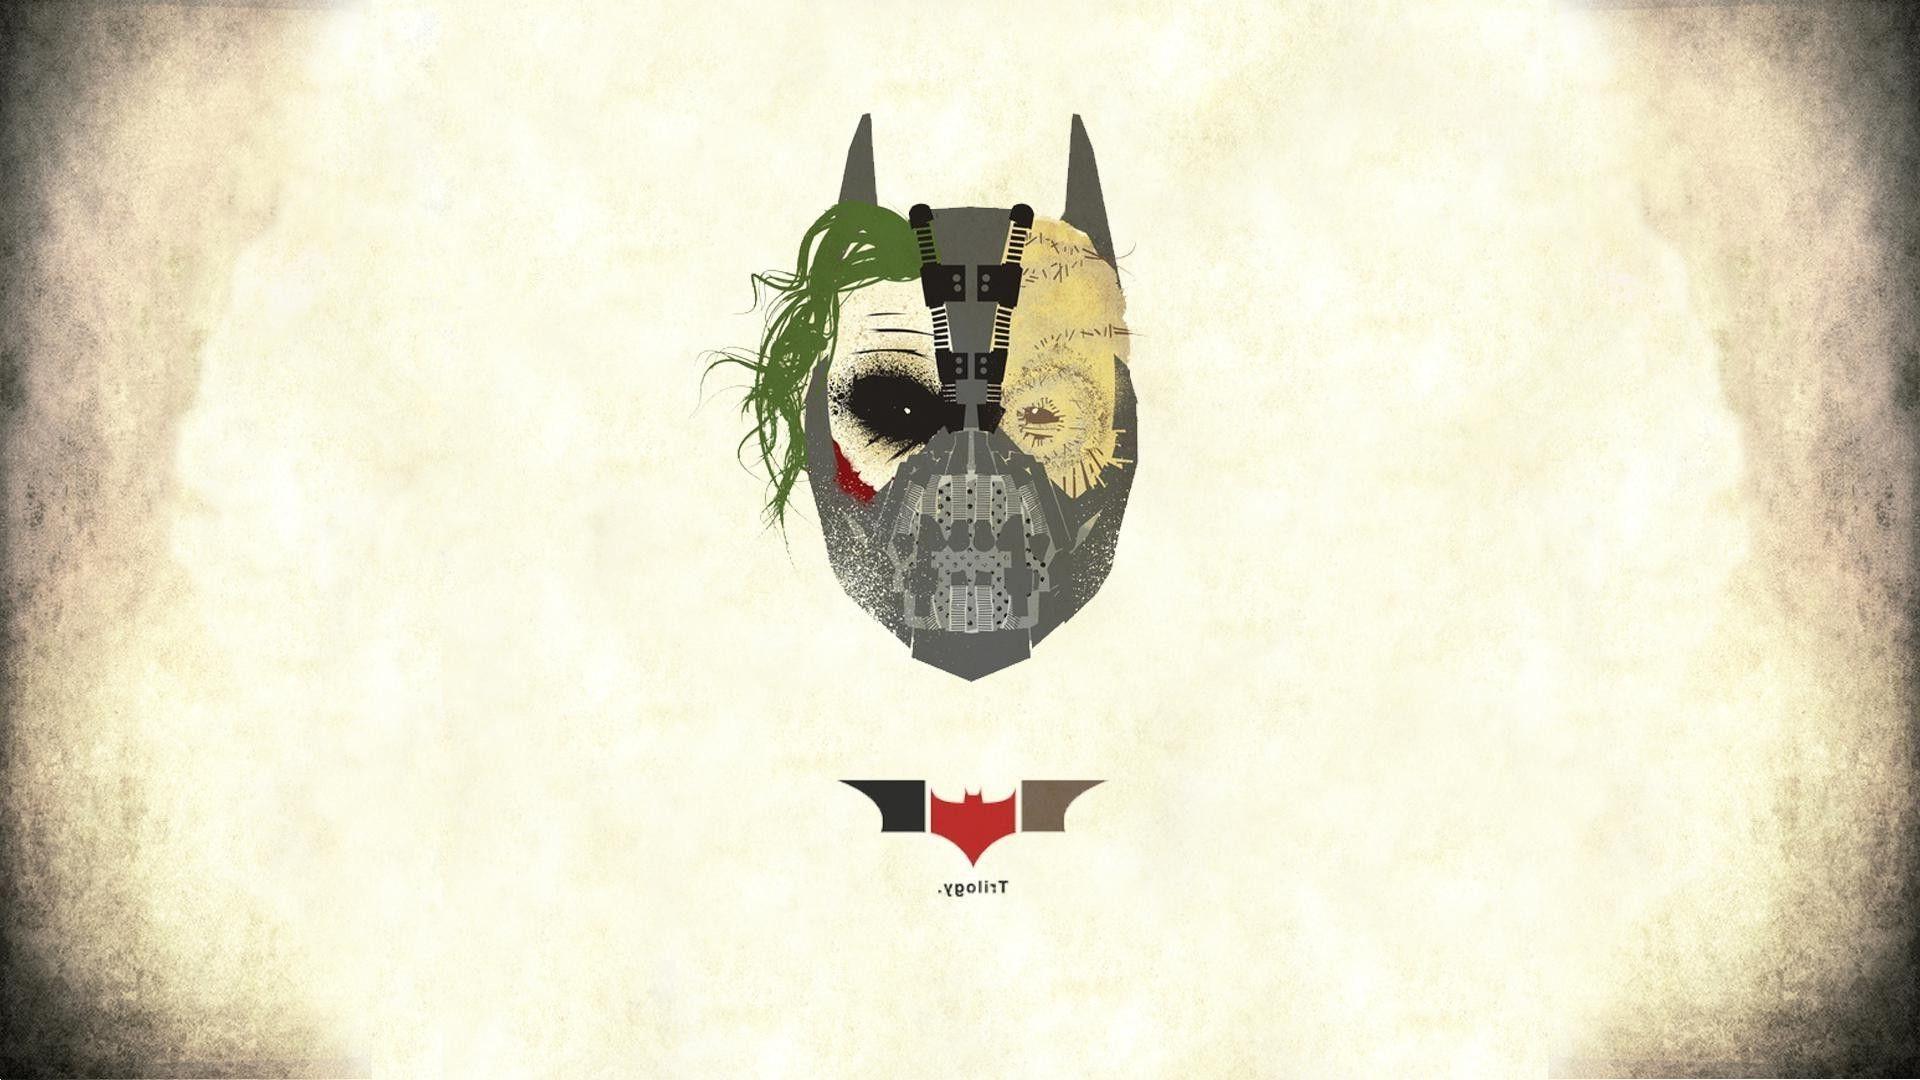 Bane Logo - Wallpaper : 1920x1080 px, Bane, Batman logo, mask, The Dark Knight ...